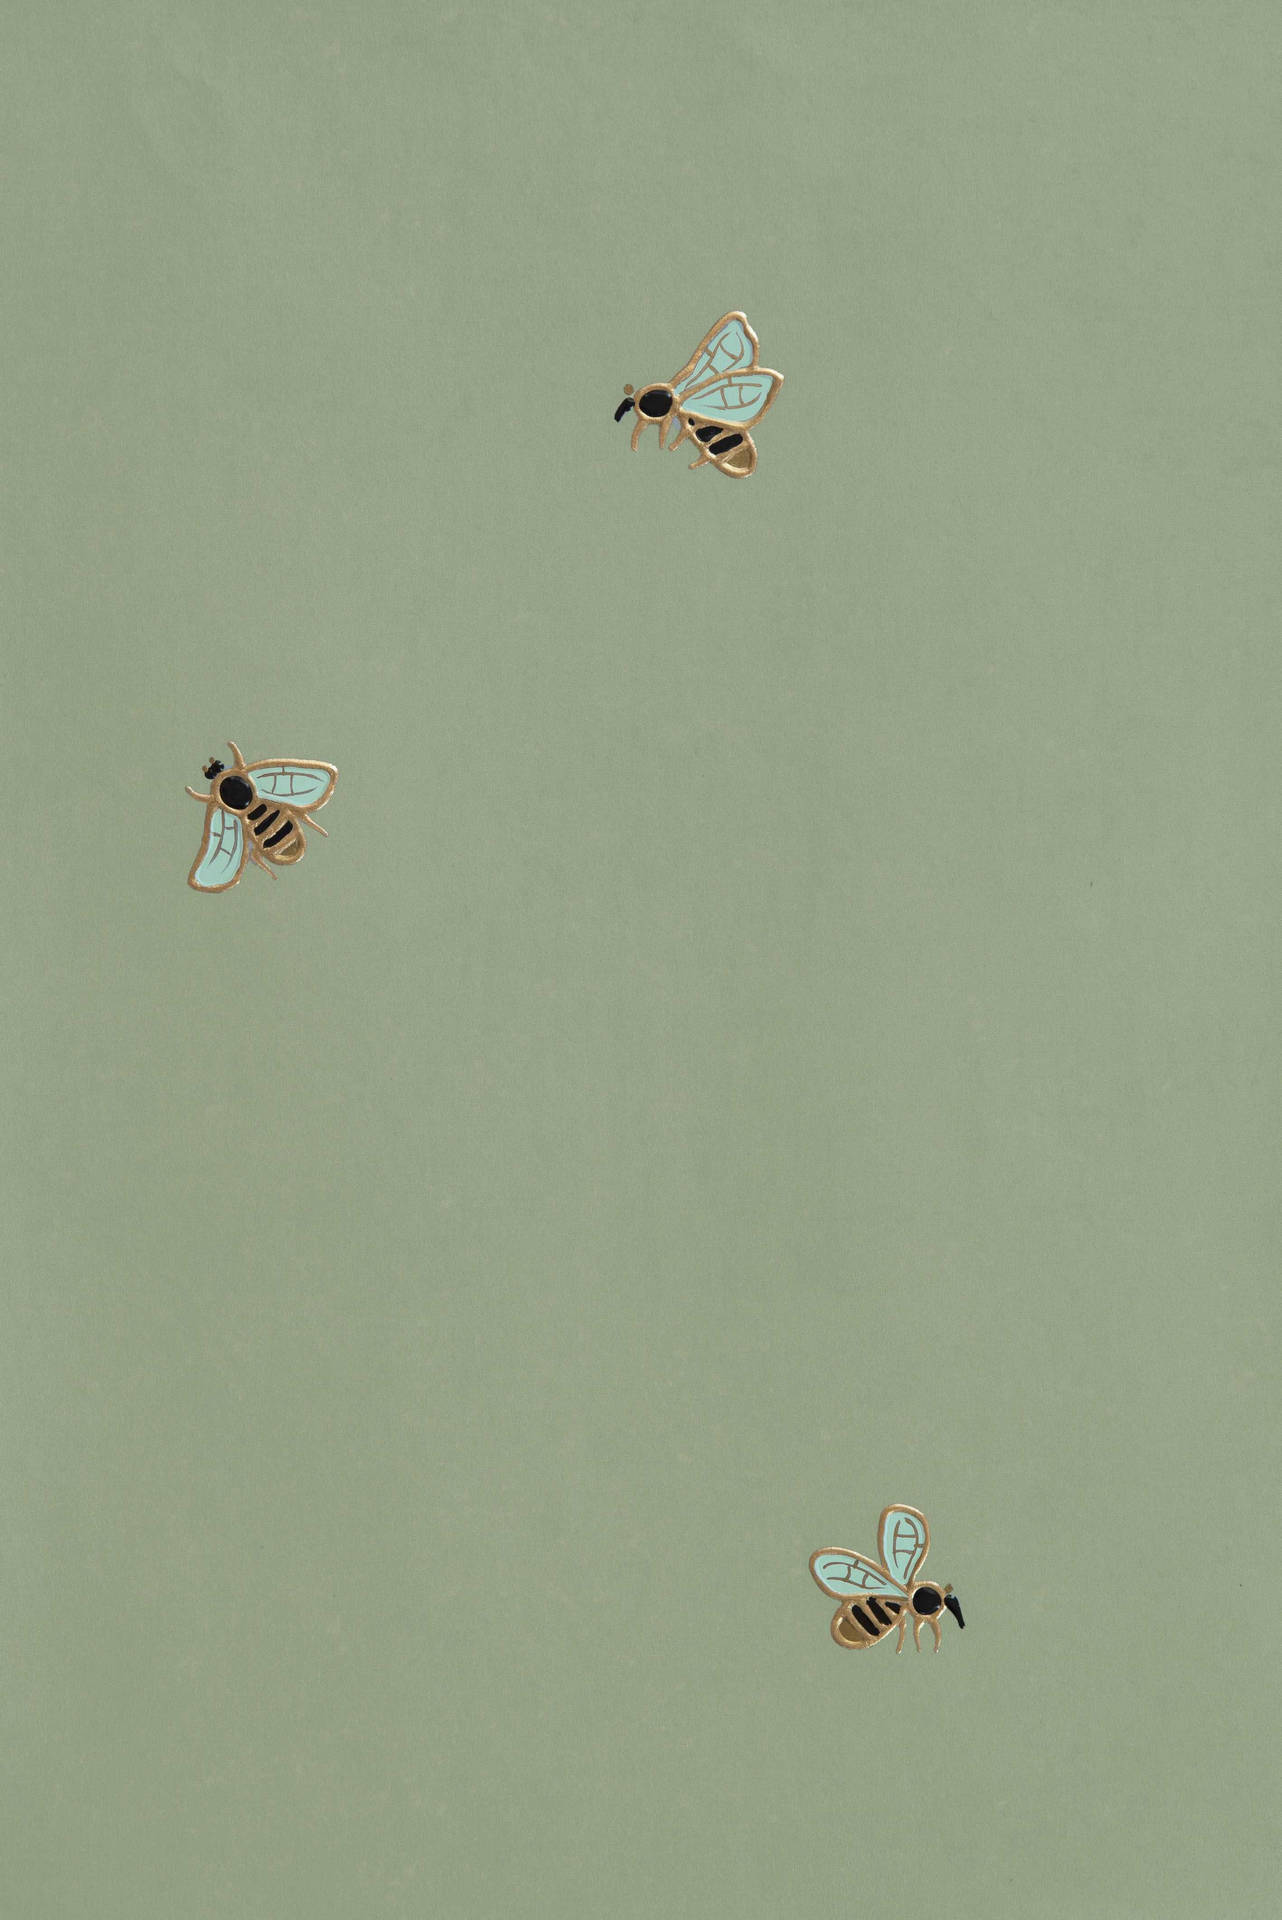 Sage Green Wall And Bees Wallpaper